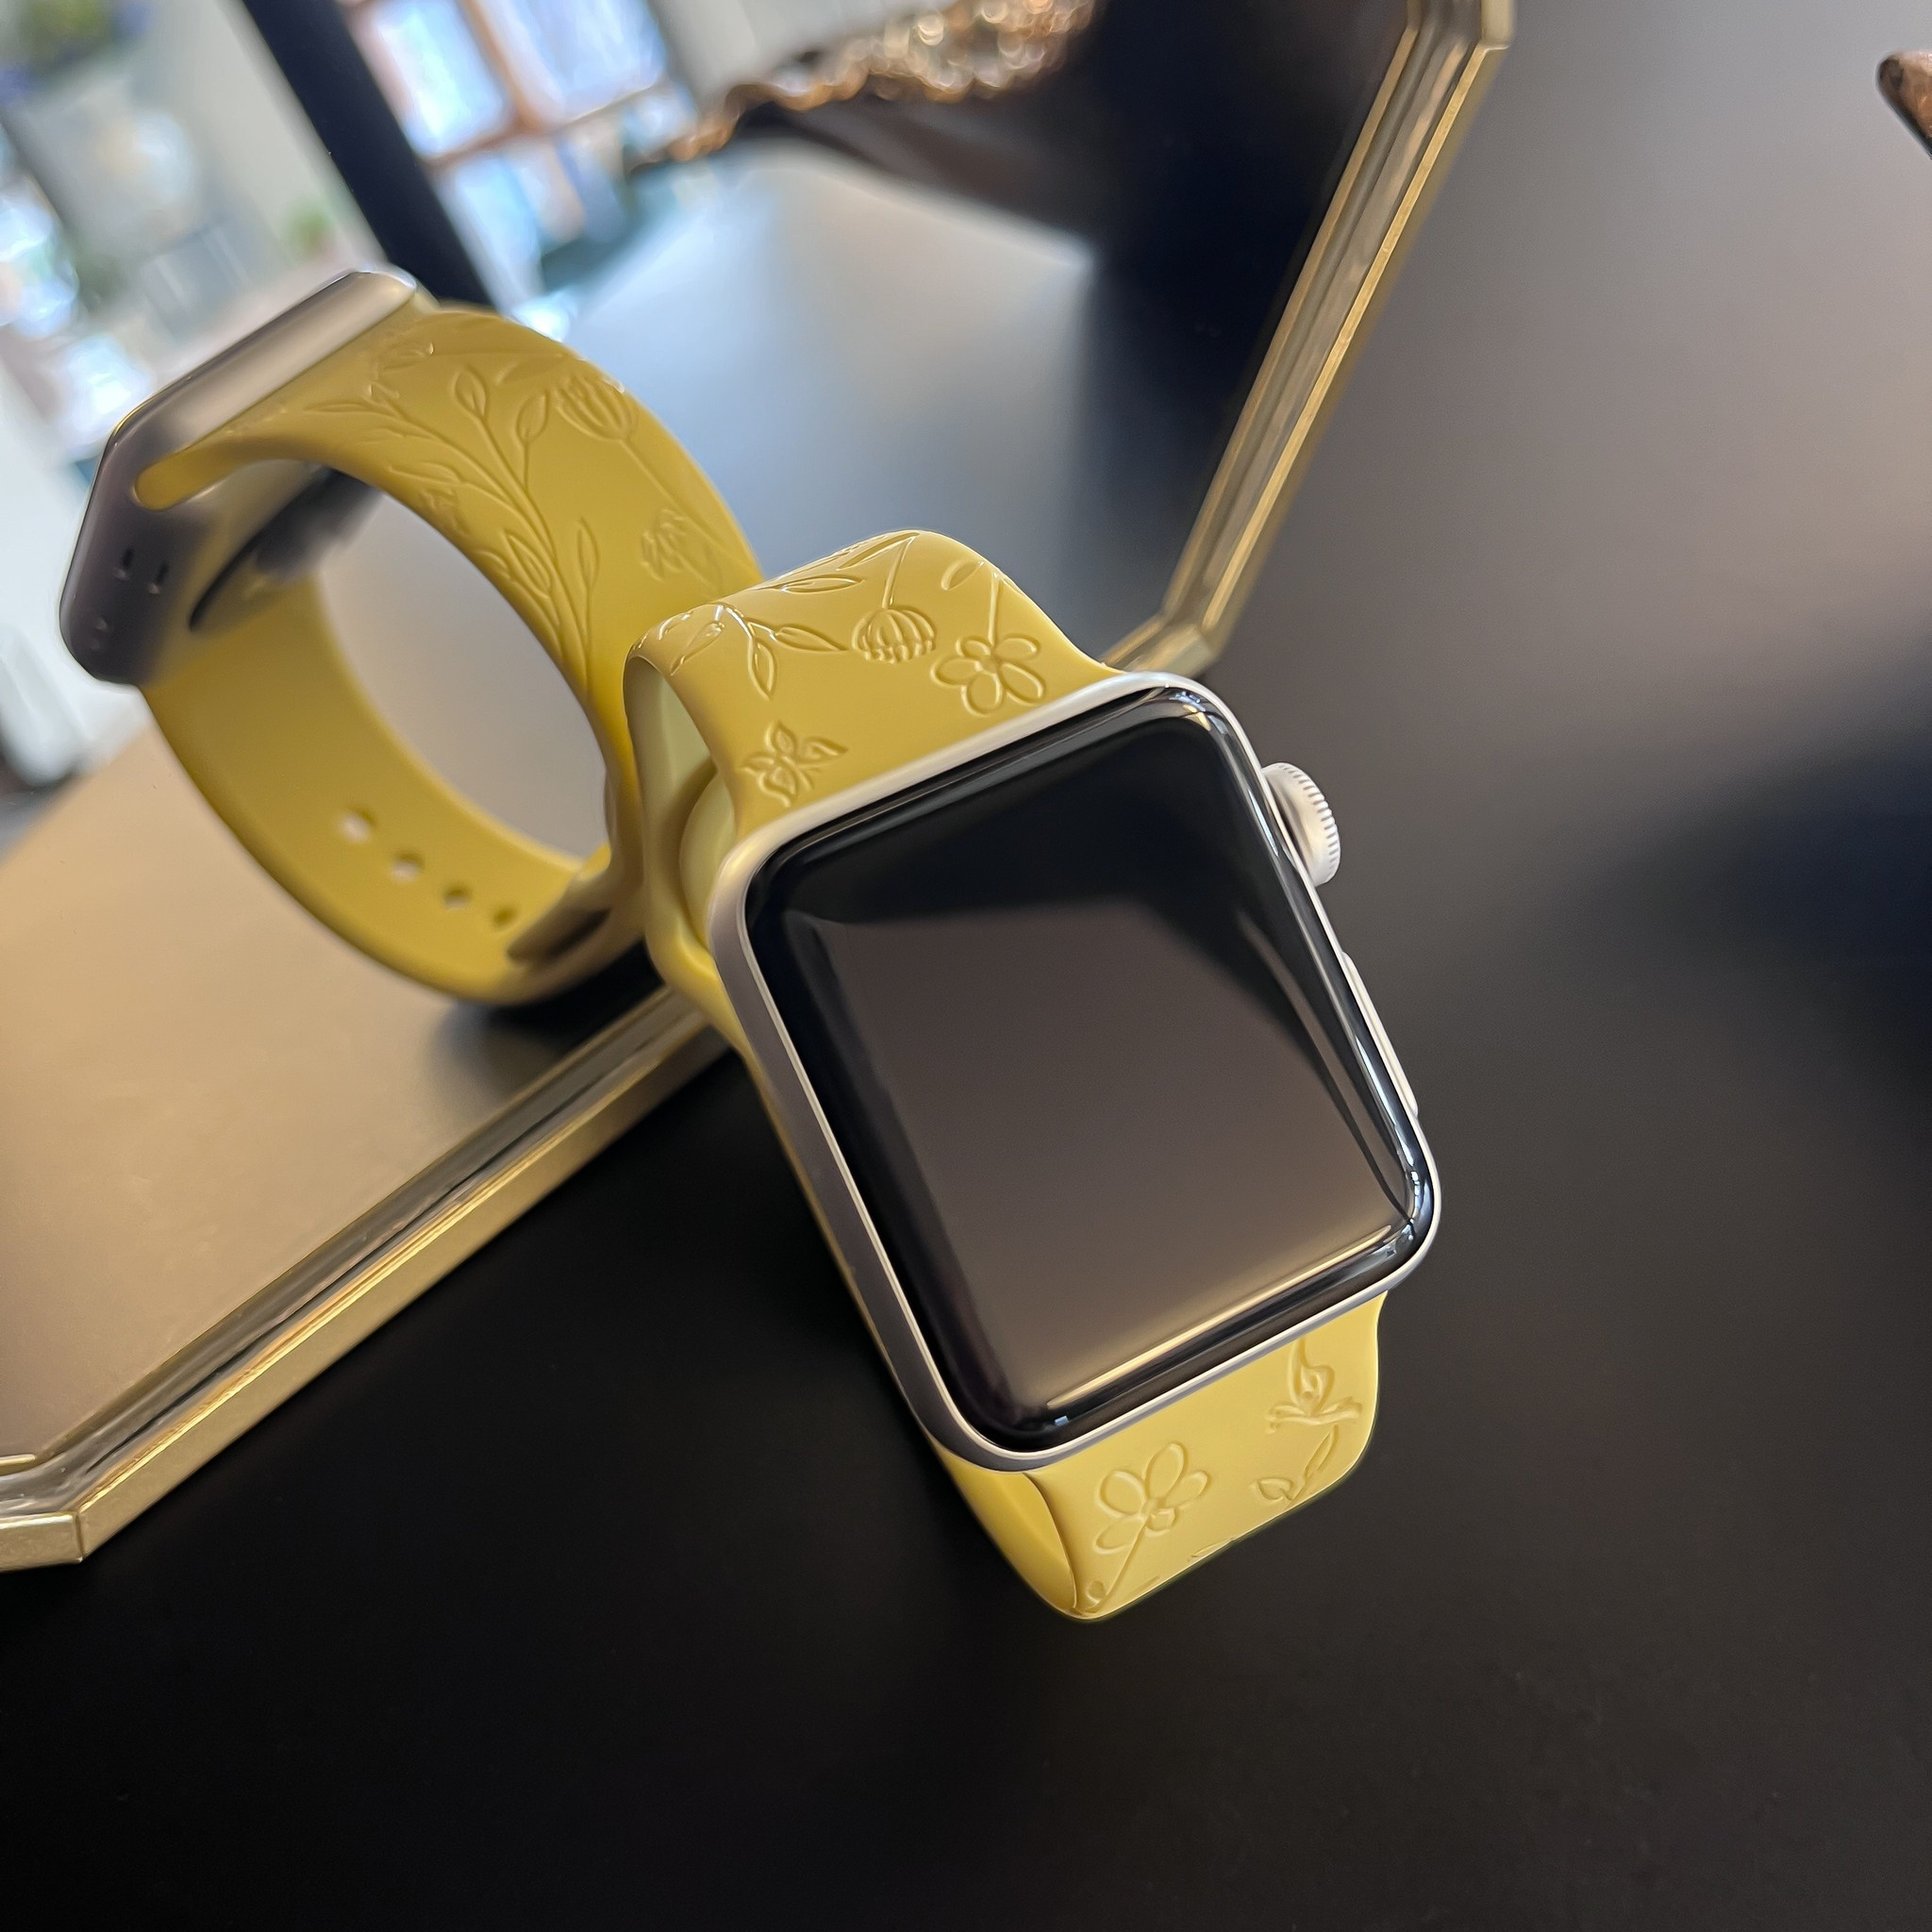 Cinturino sport con stampa per Apple Watch - giallo floreale